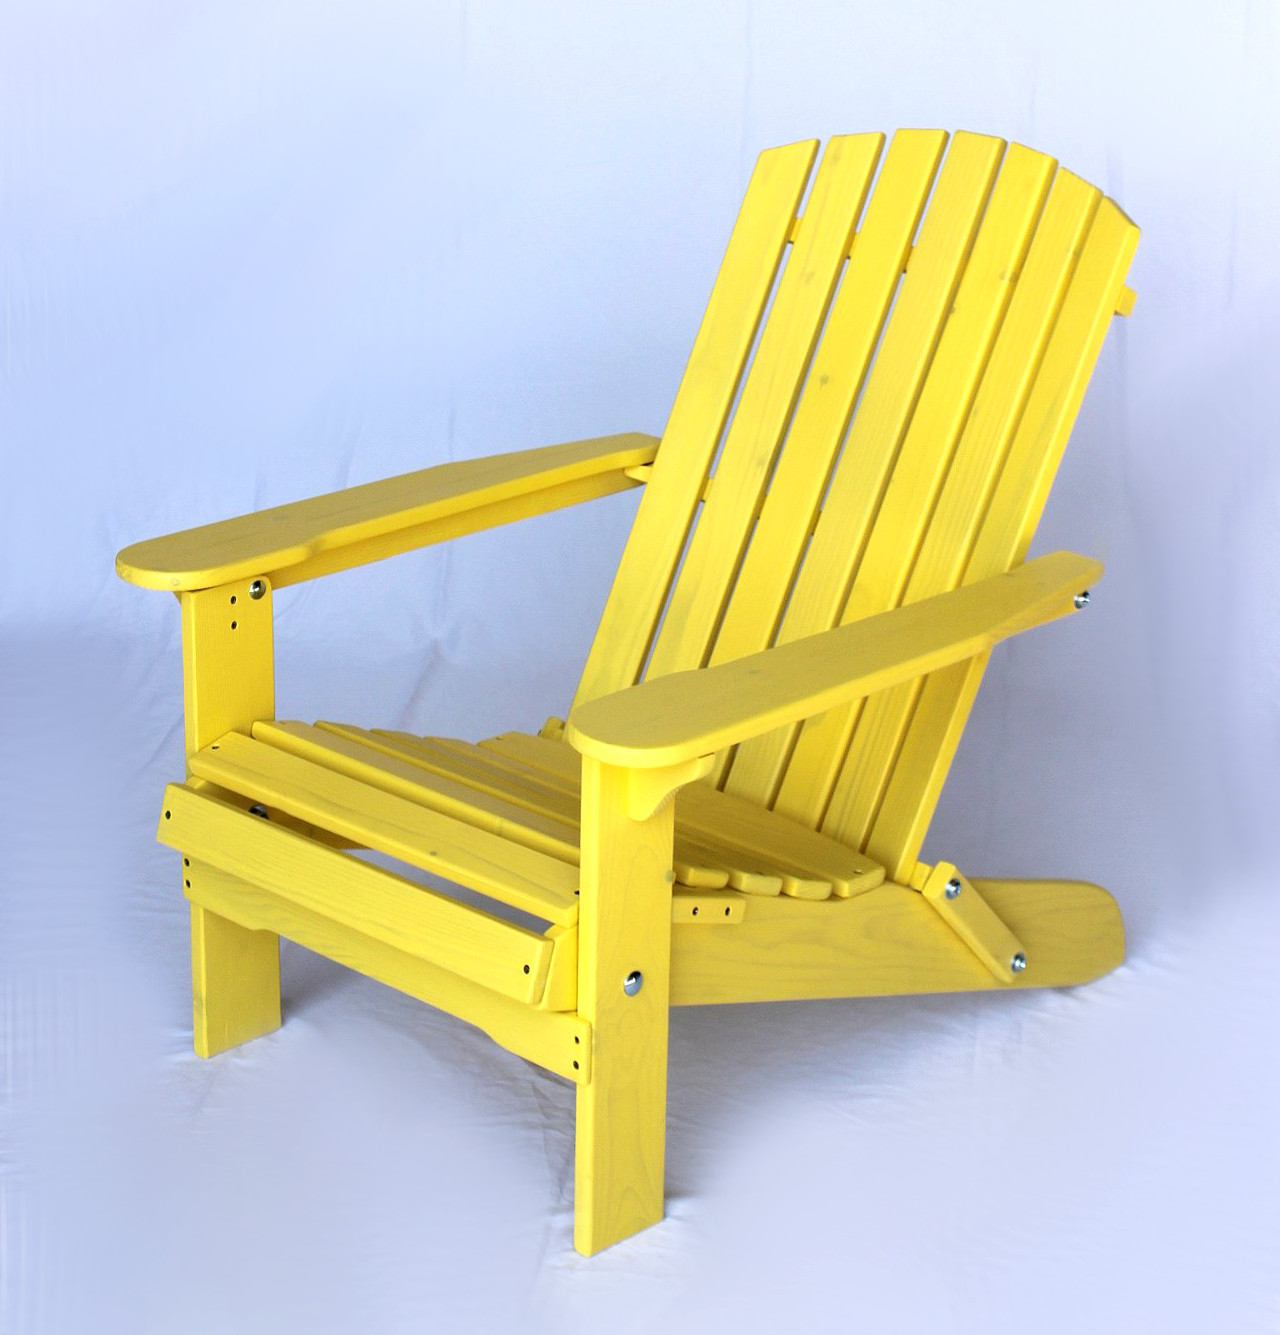 DanDiBo Strandstuhl Sonnenstuhl aus Holz Gelb Gartenstuhl klappbar  Adirondack Chair Deckchair-DanDiBo